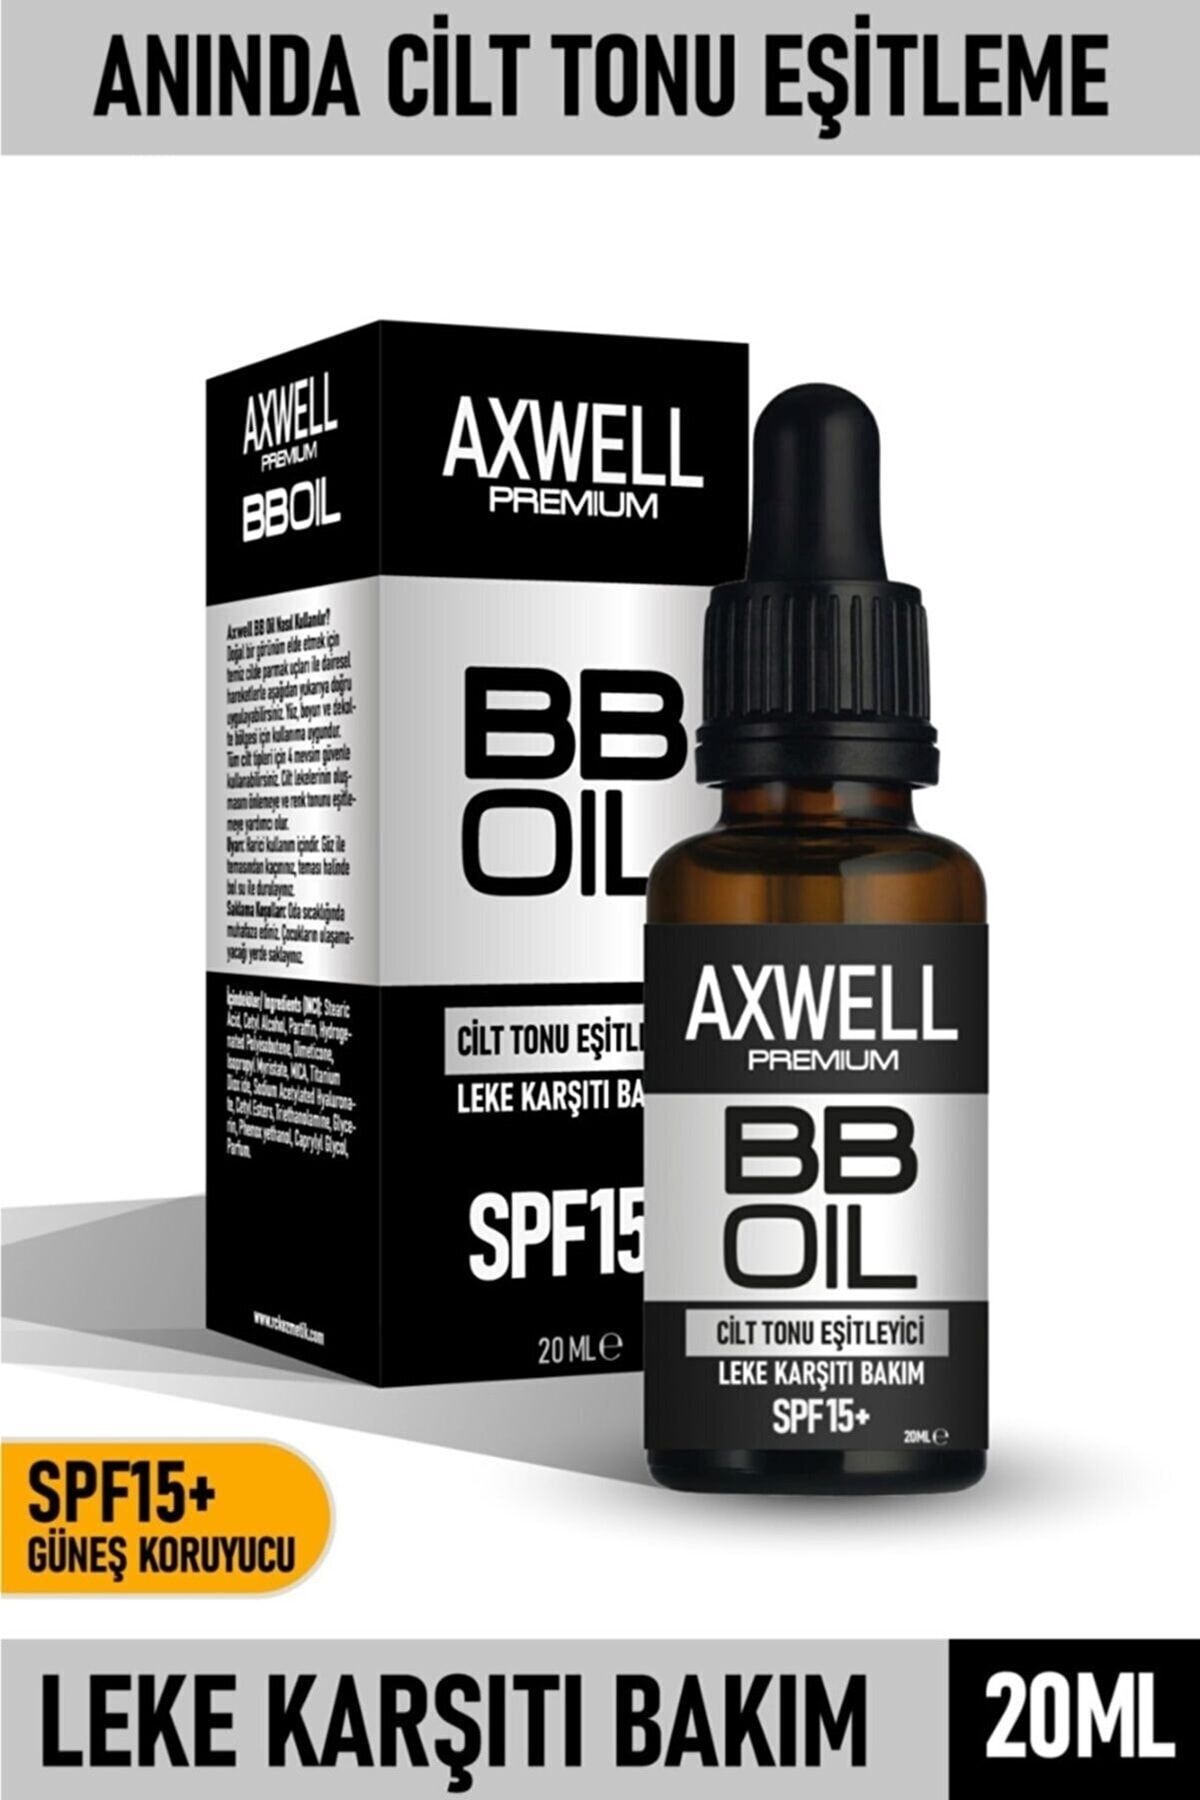 AXWELL Bb Oil Cilt Tonu Eşitleyici & Leke Karşıtı Bakım 20ml